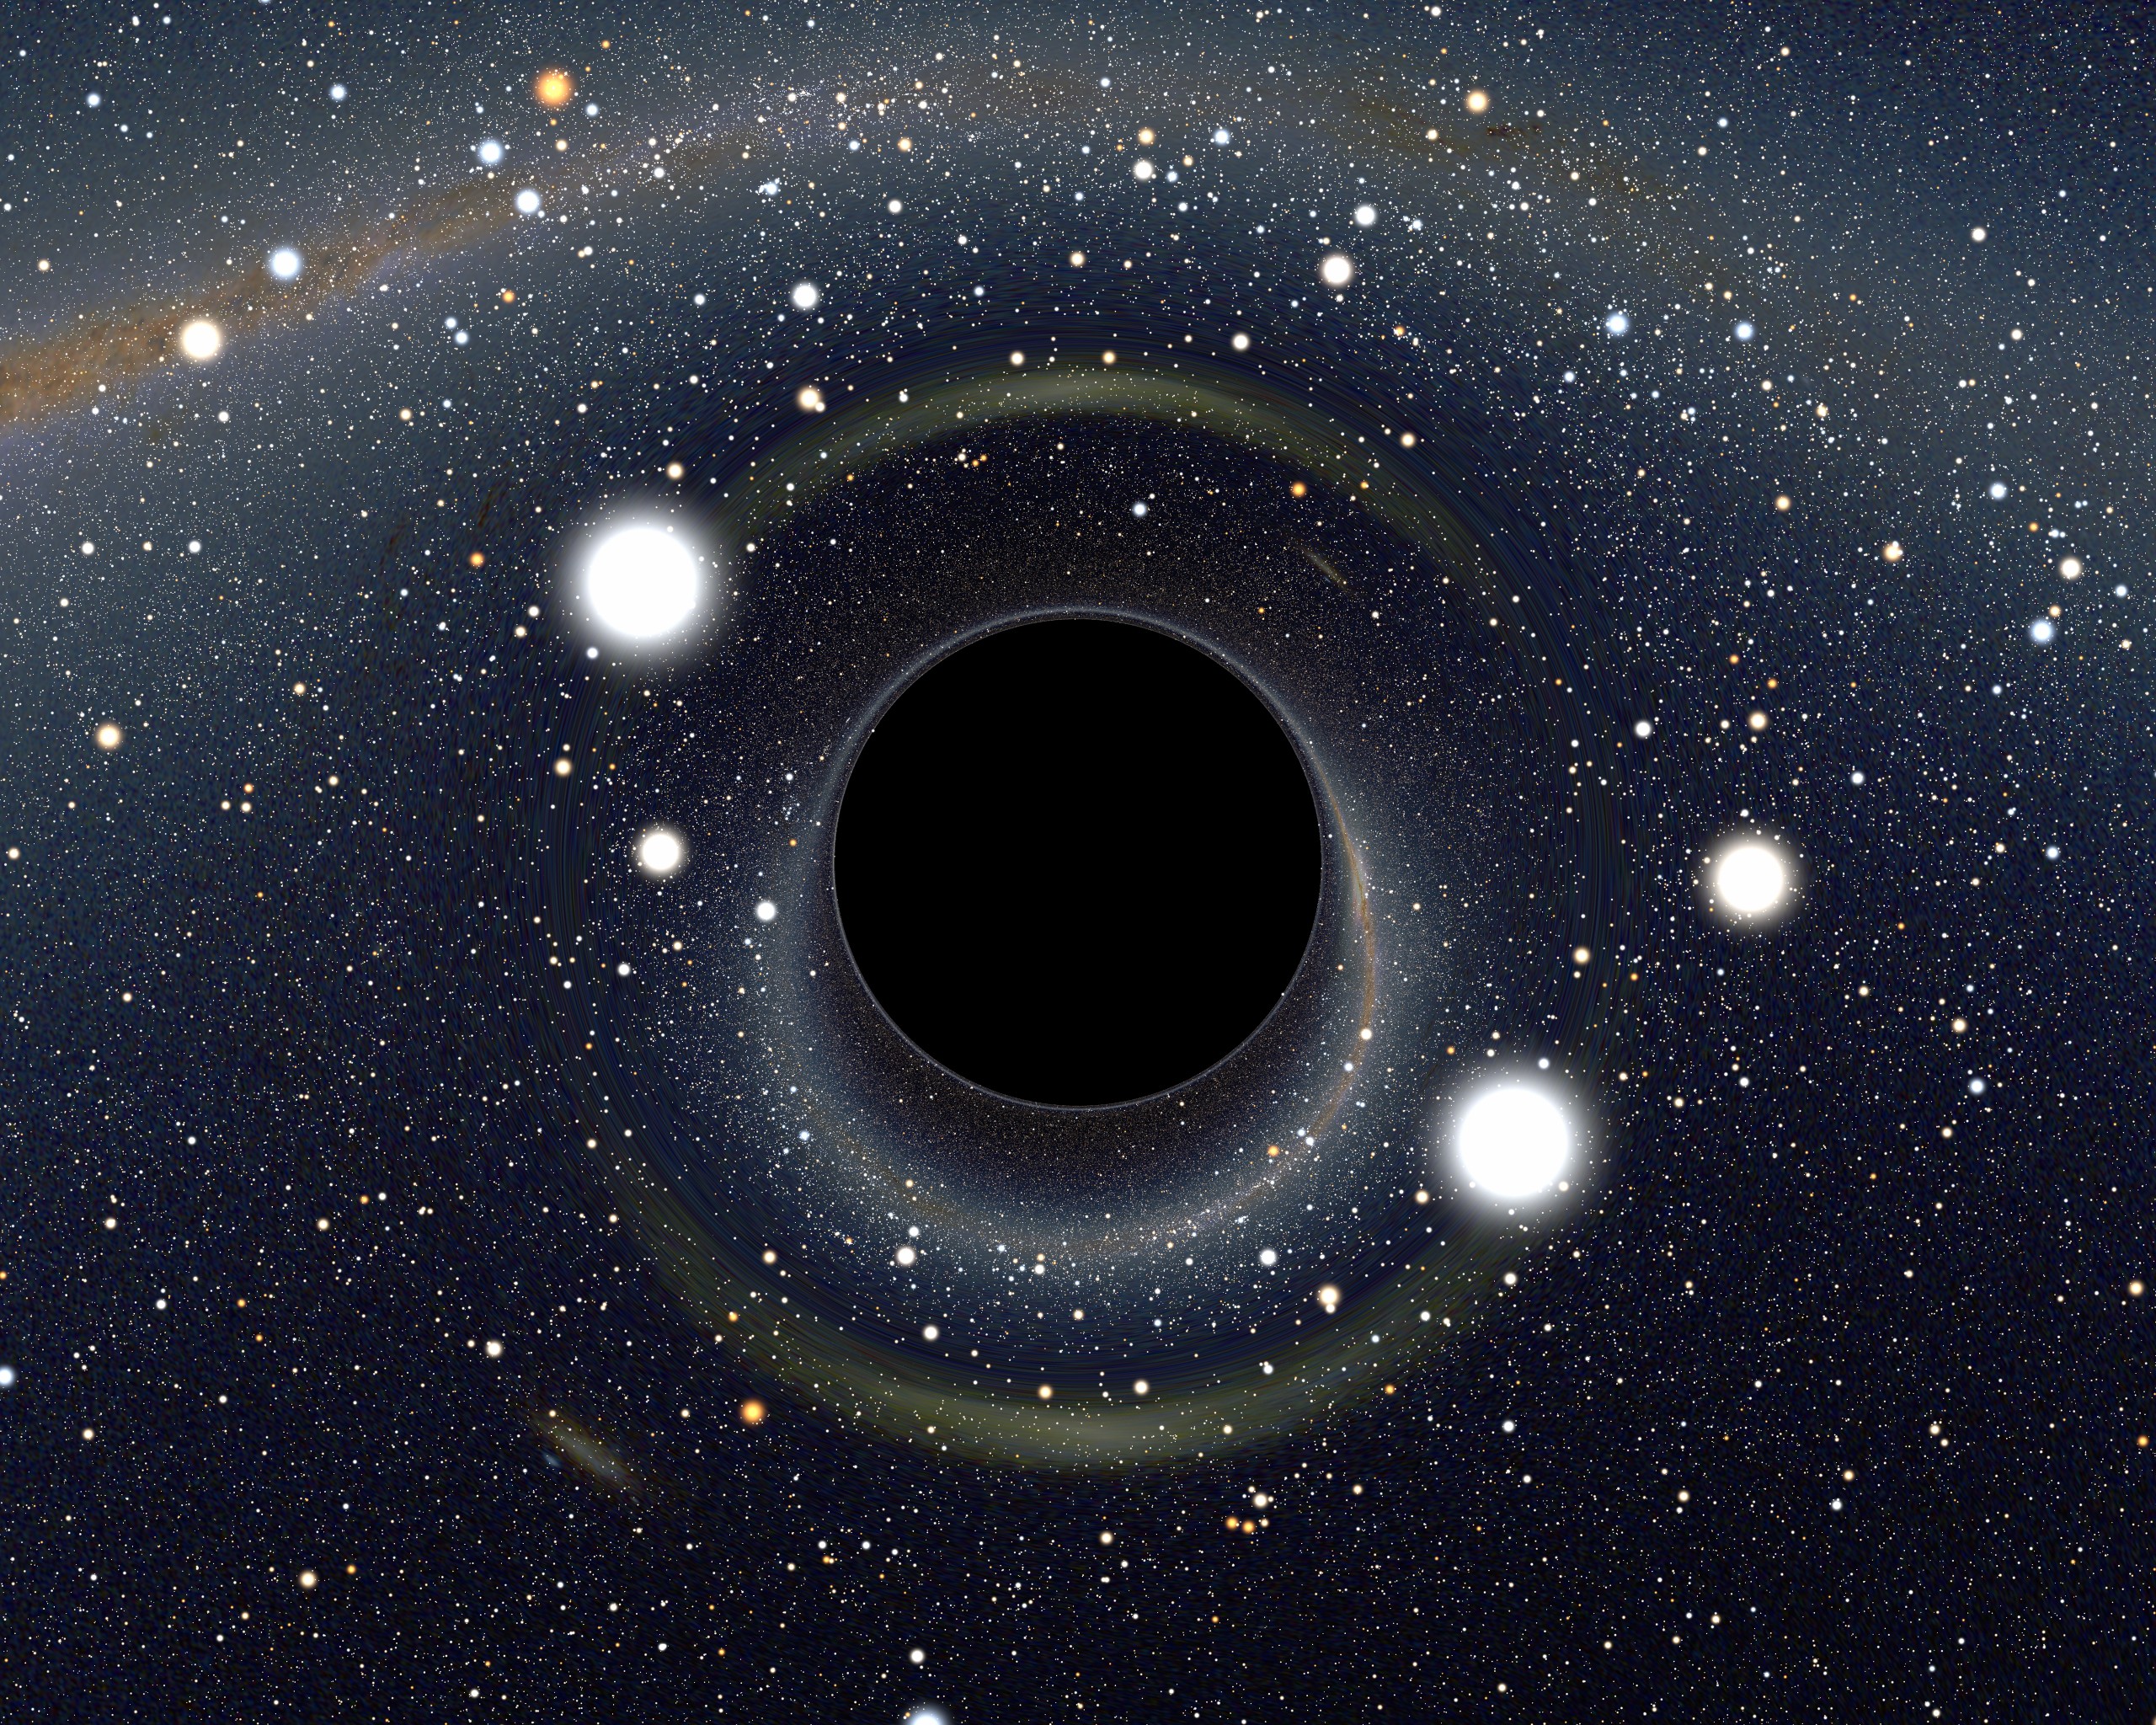 reissner nordstrom black hole